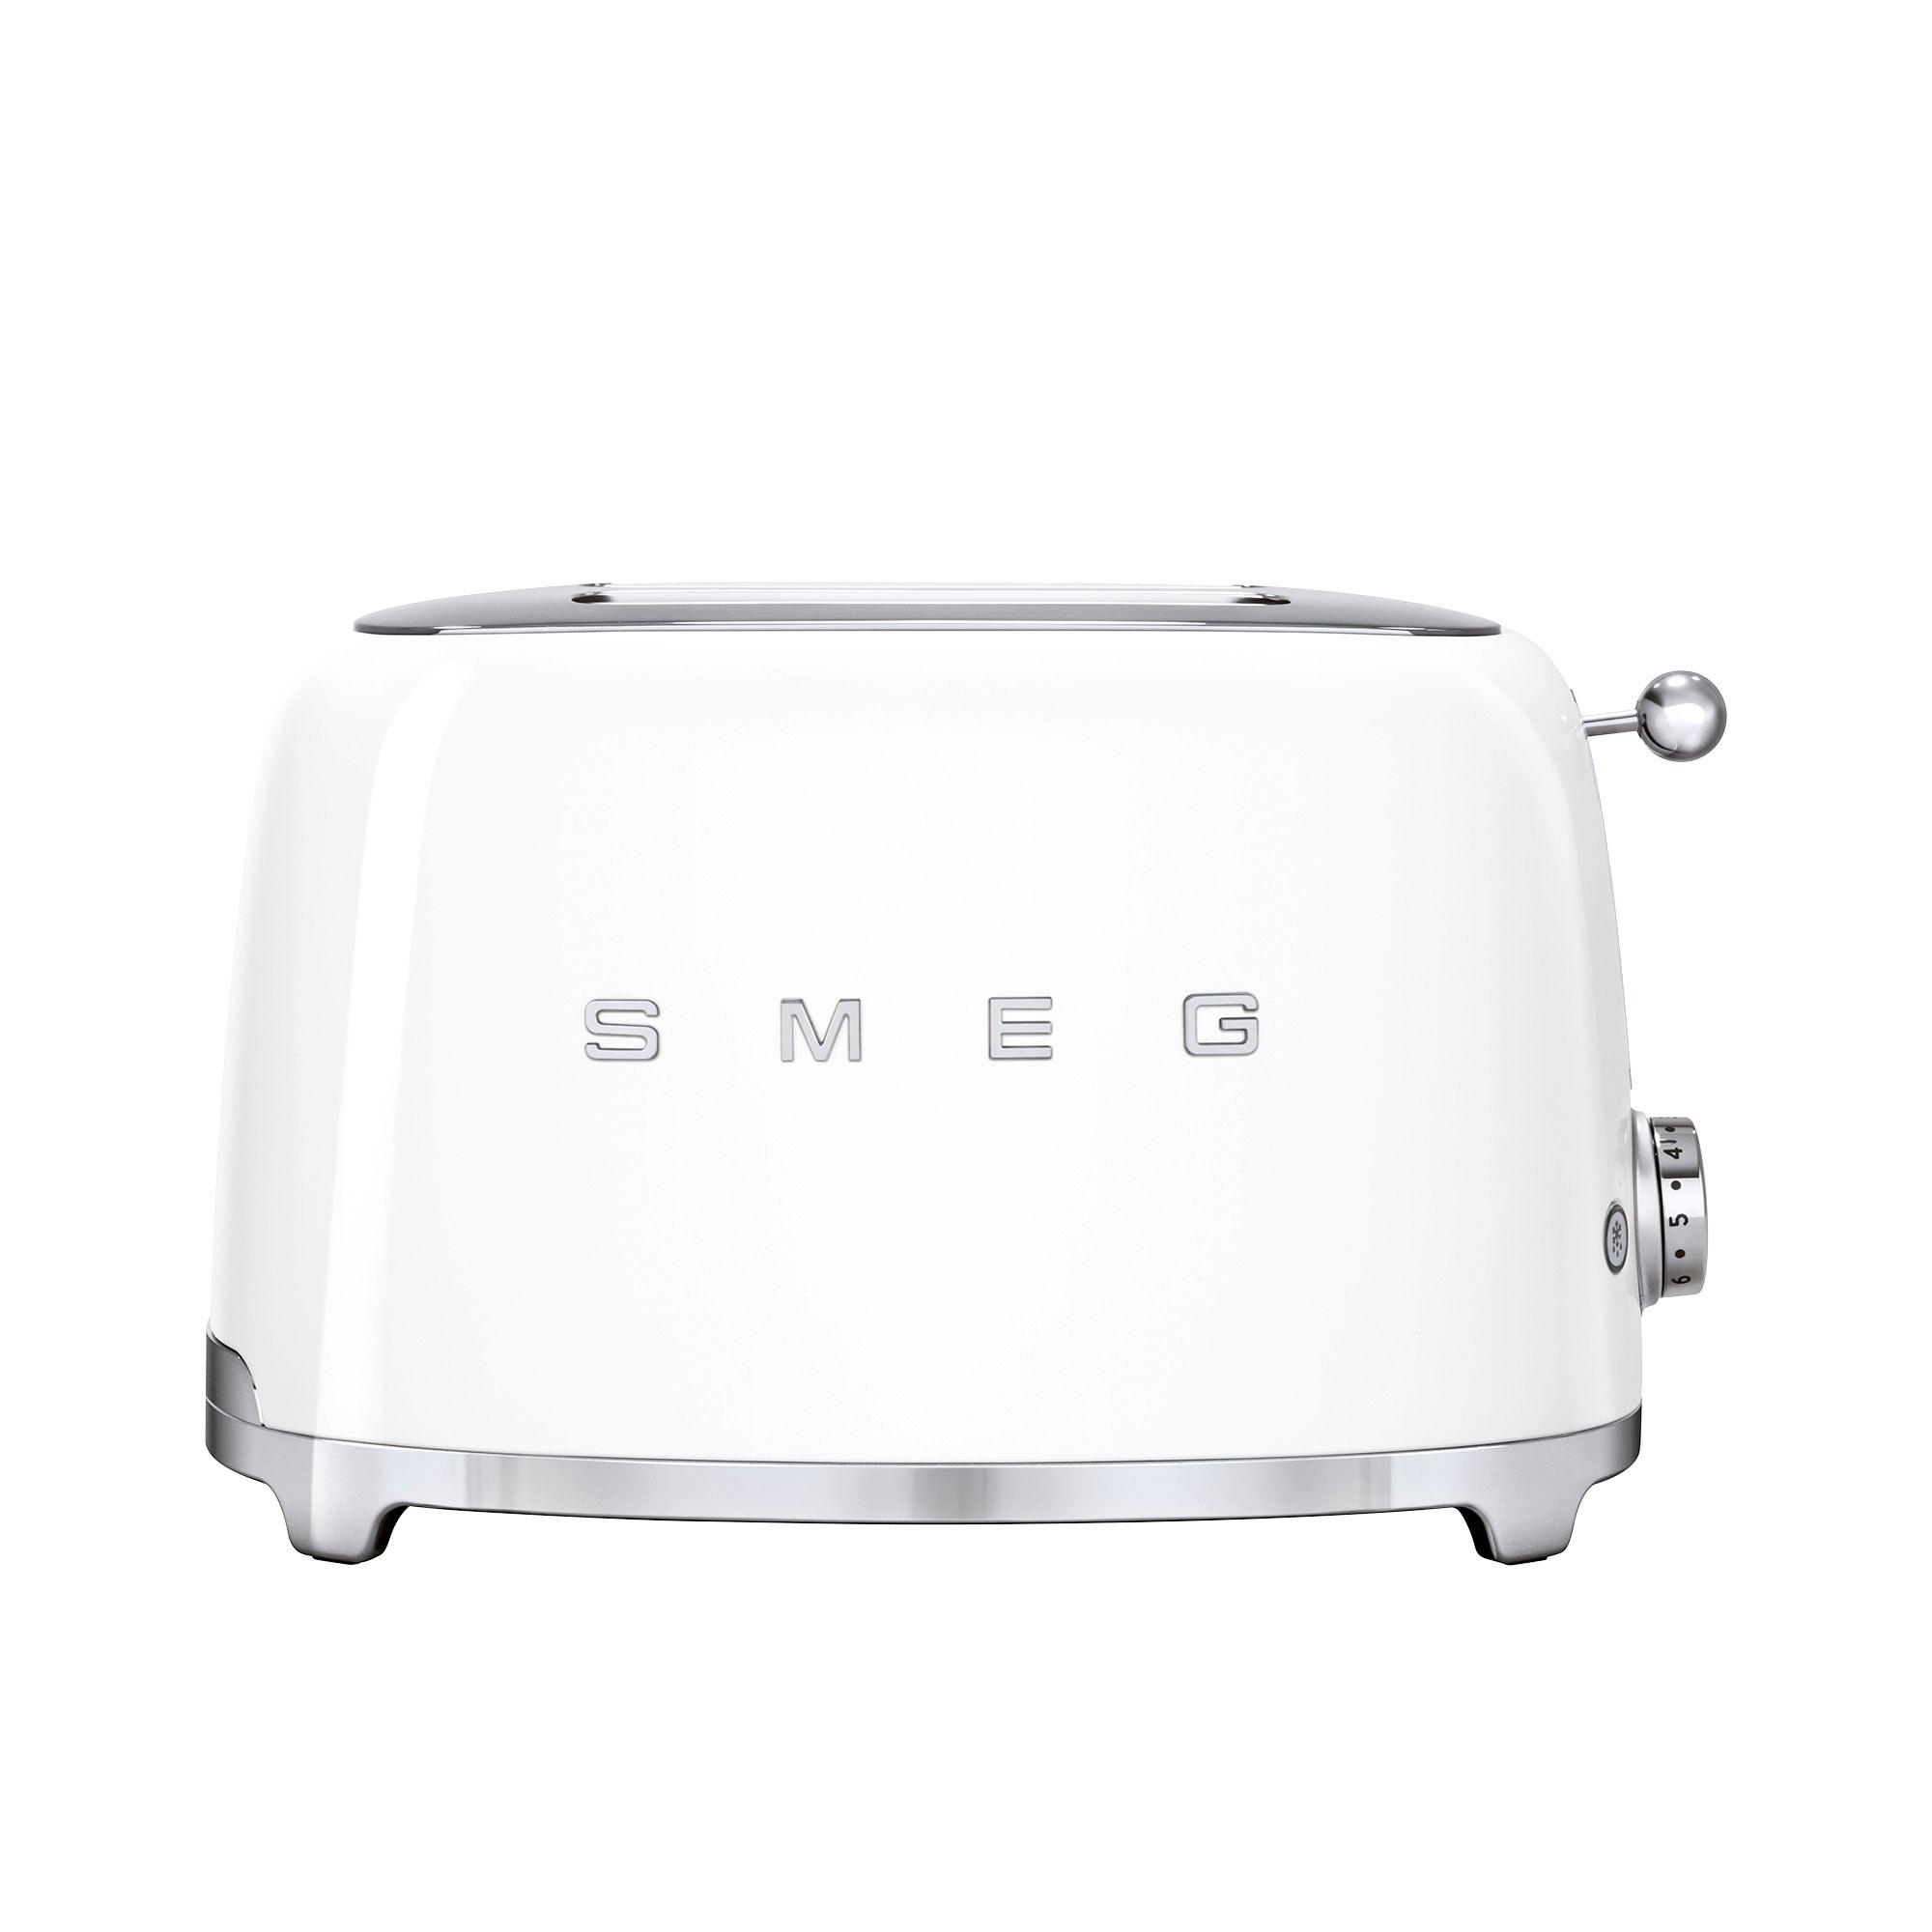 Smeg 50's Retro Style 2 Slice Toaster White Image 4